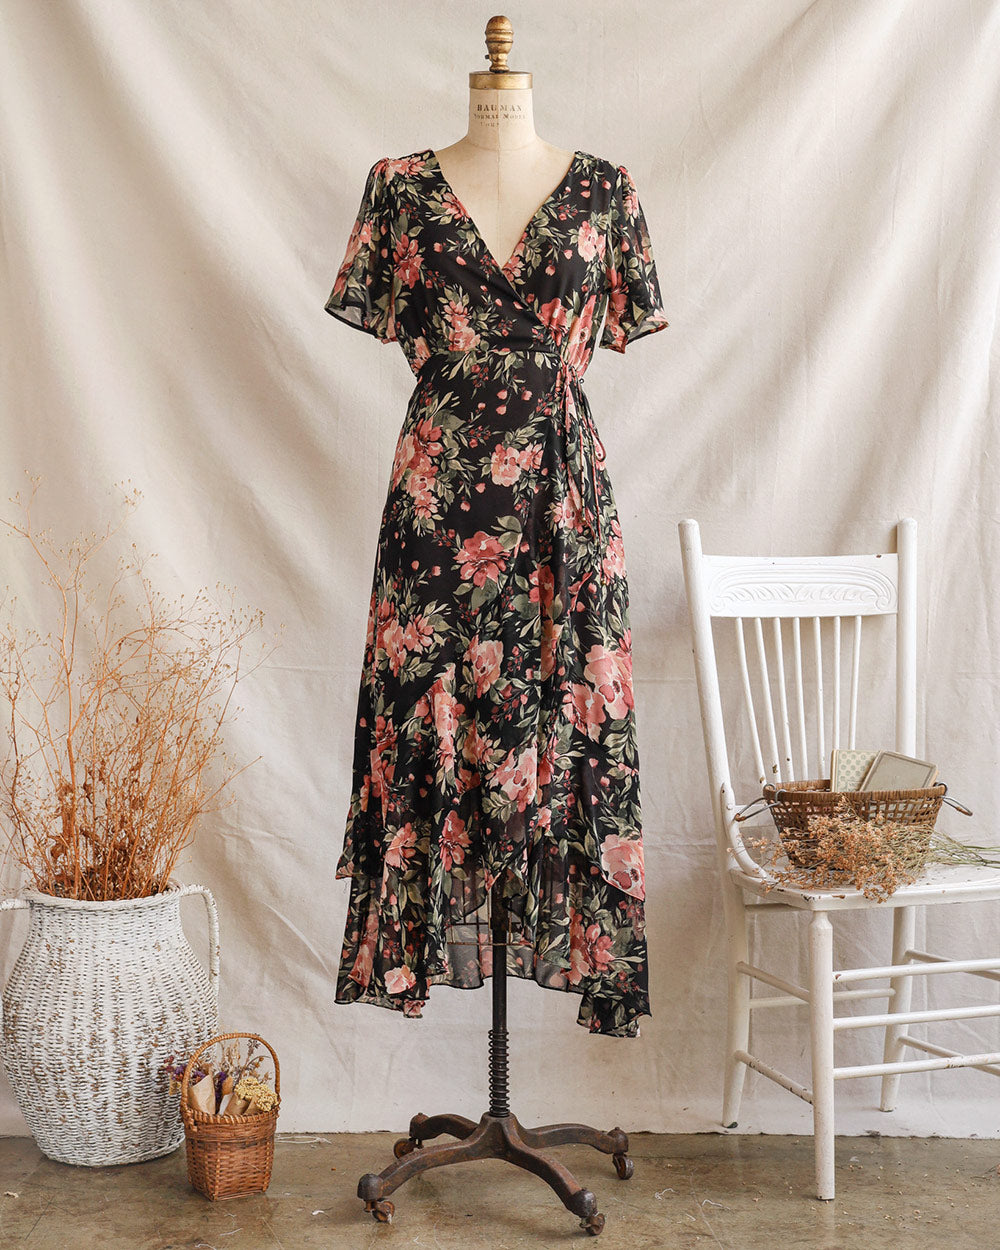 Vintage Inspired Dresses / Romantic Feminine Dresses / Floral Dresses –  Page 2 – Adored Vintage